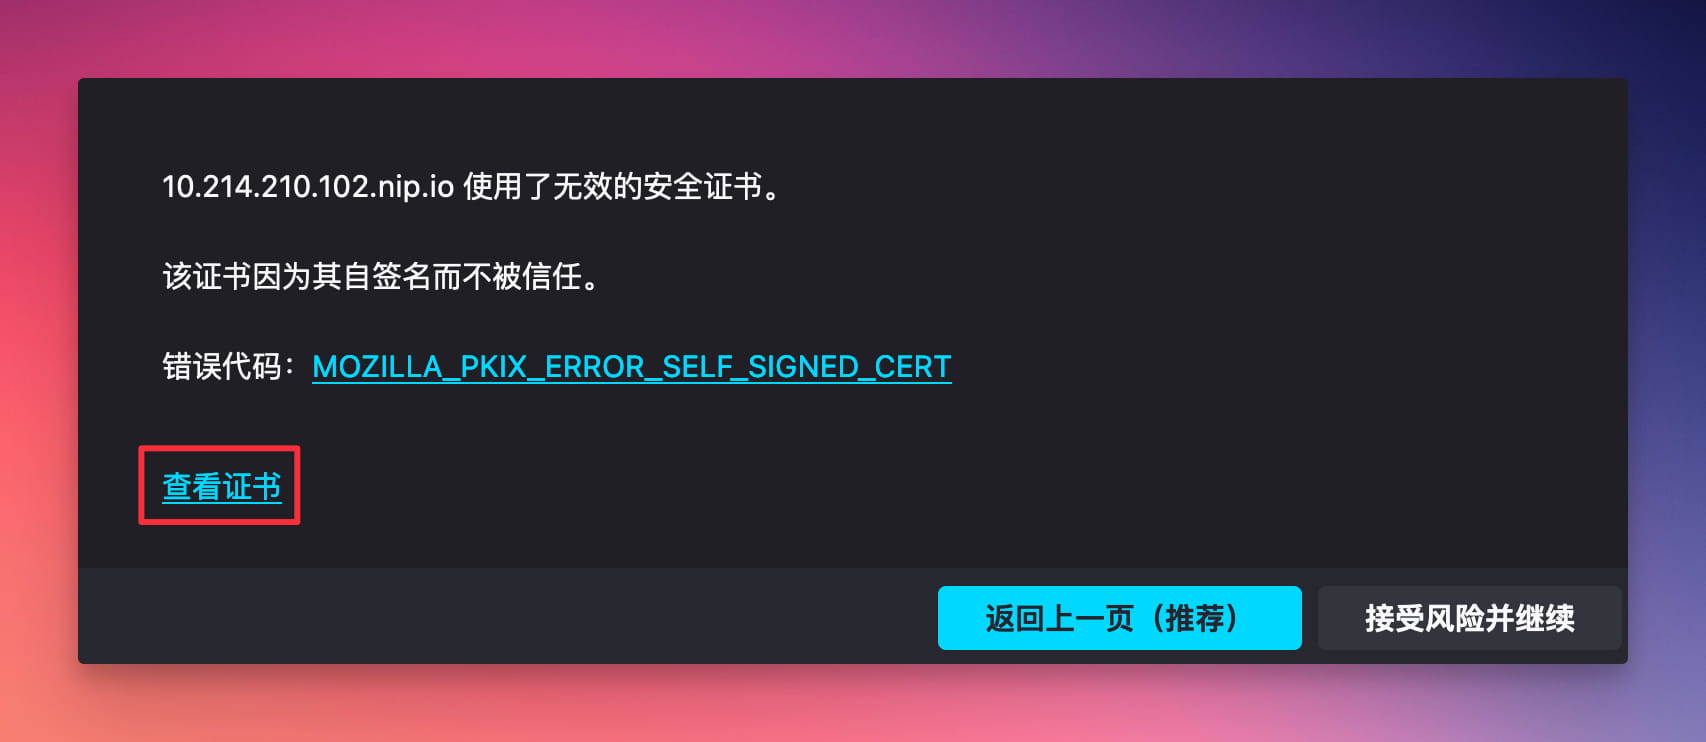 firefox-export-certificate-2.jpg